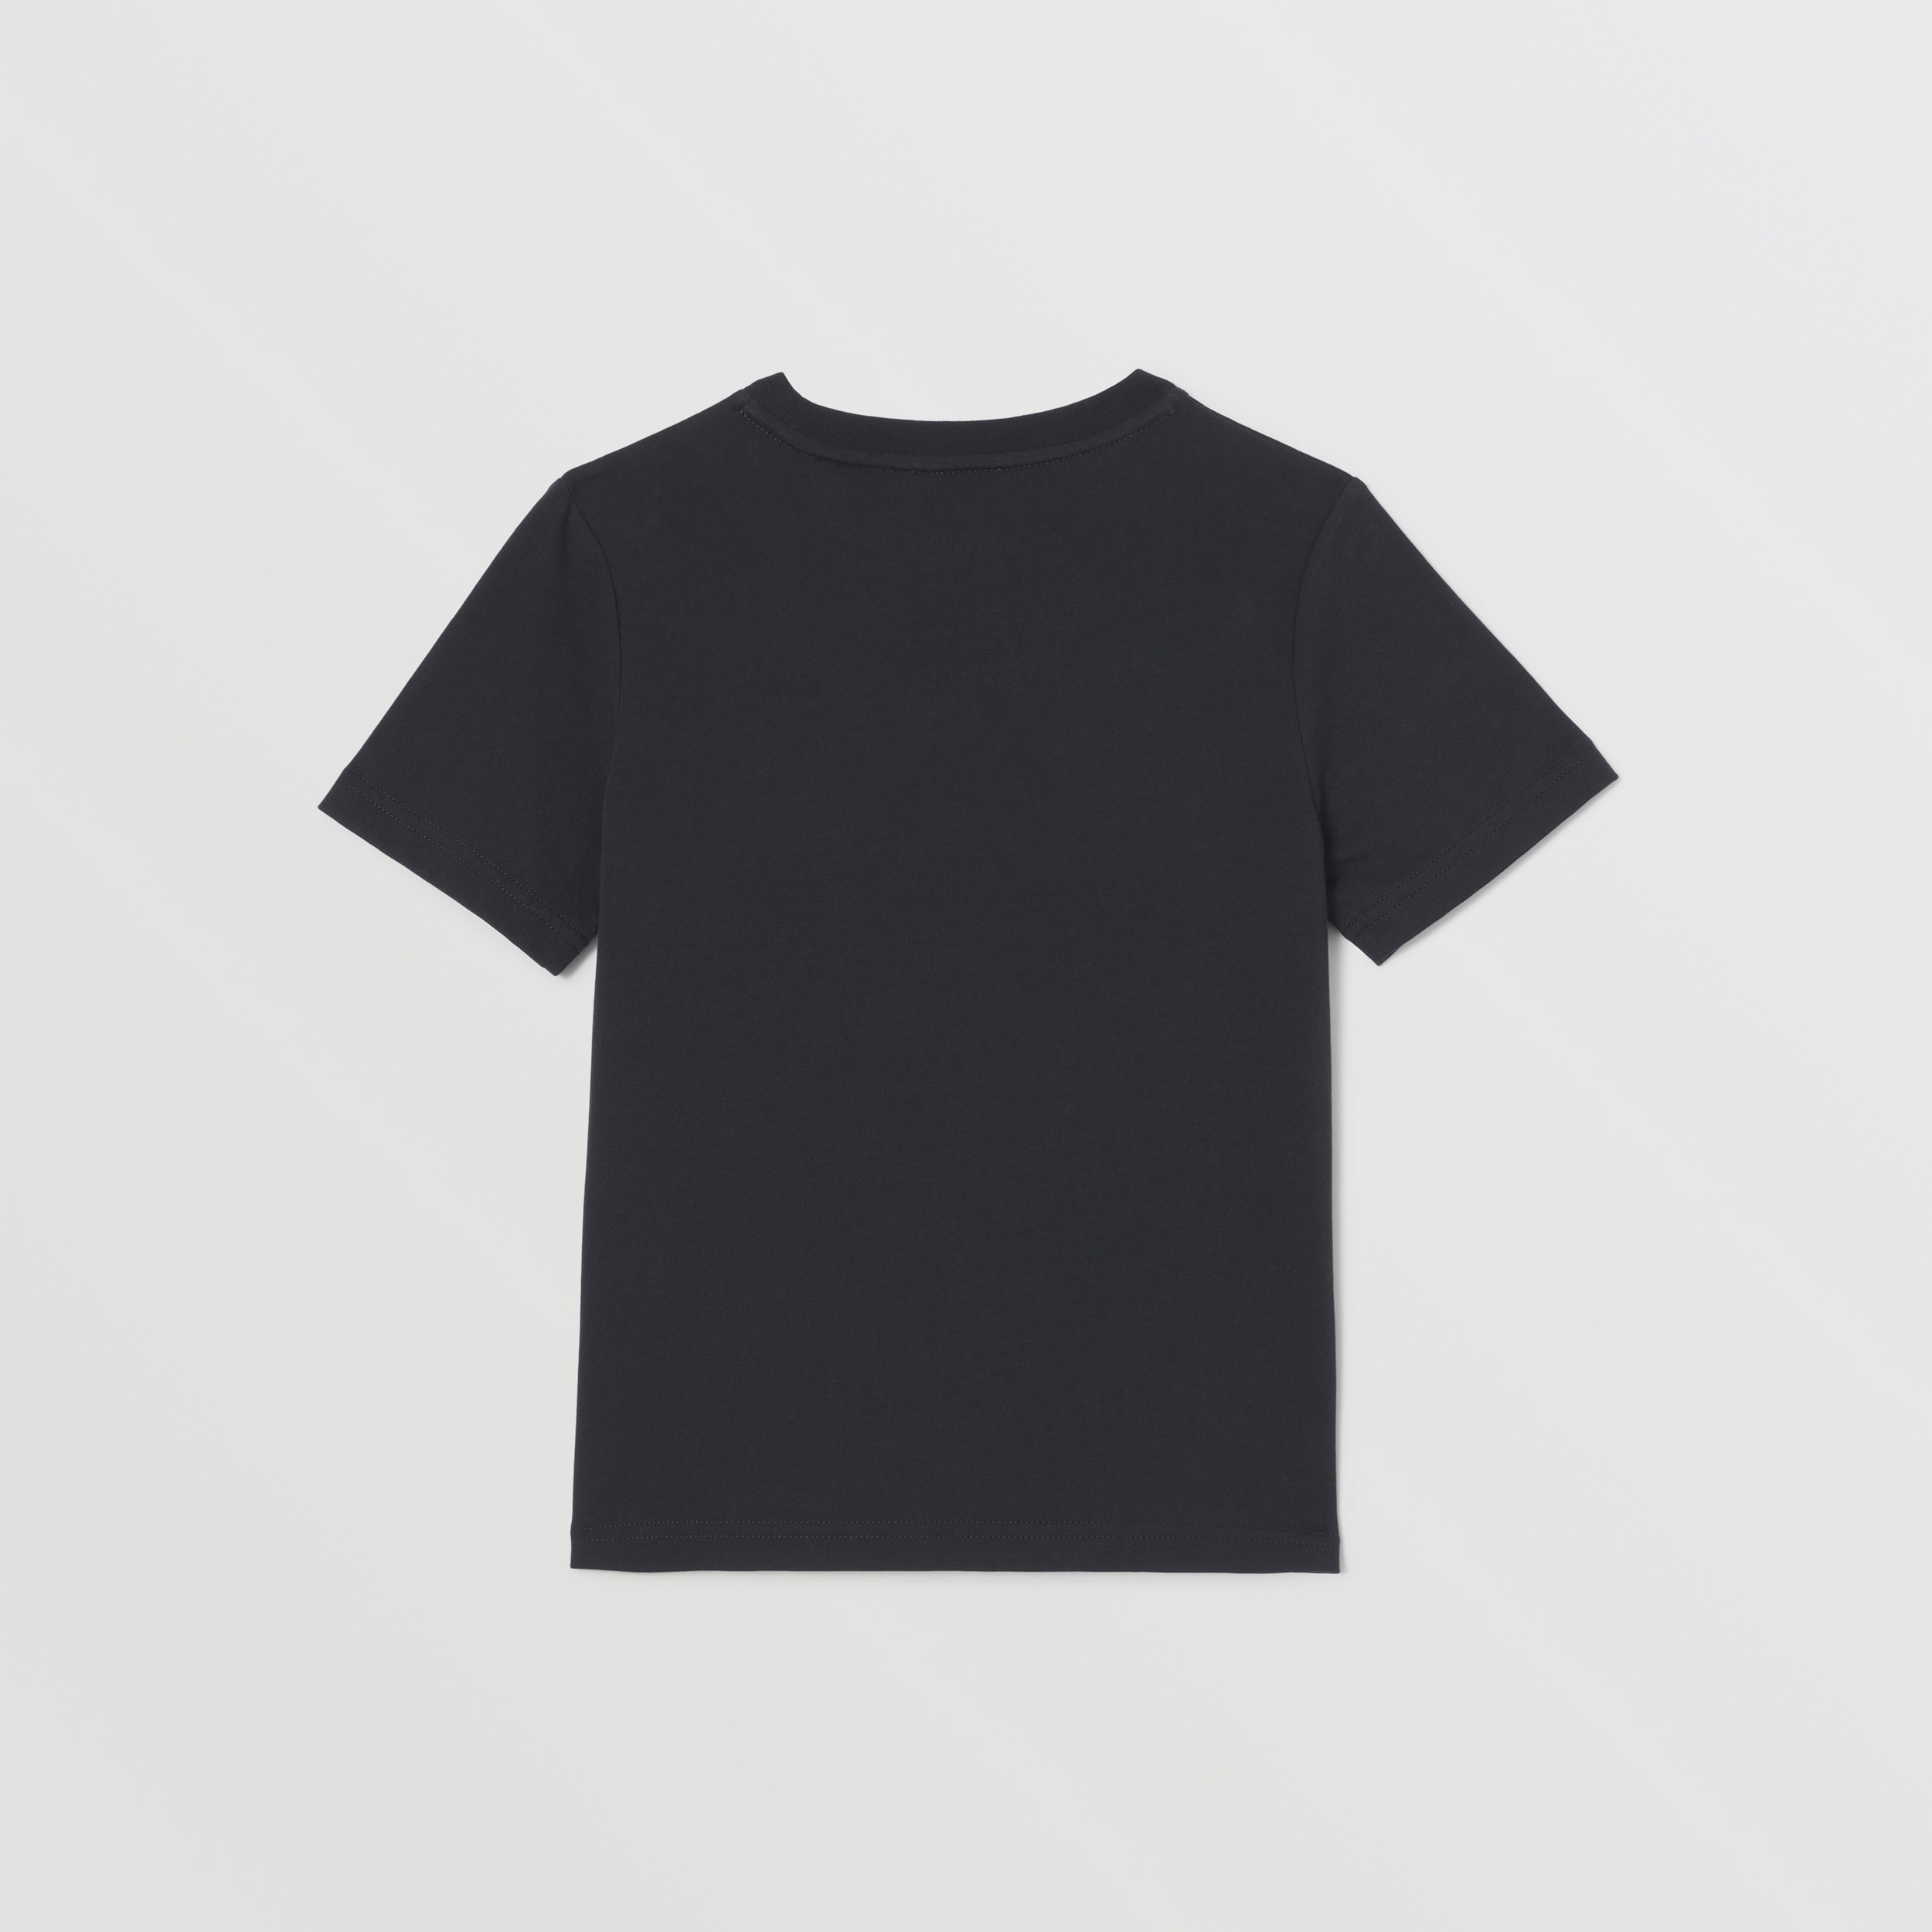 Хлопчатобумажная футболка с коллажным принтом (Черный) | Официальный сайт Burberry® - 4